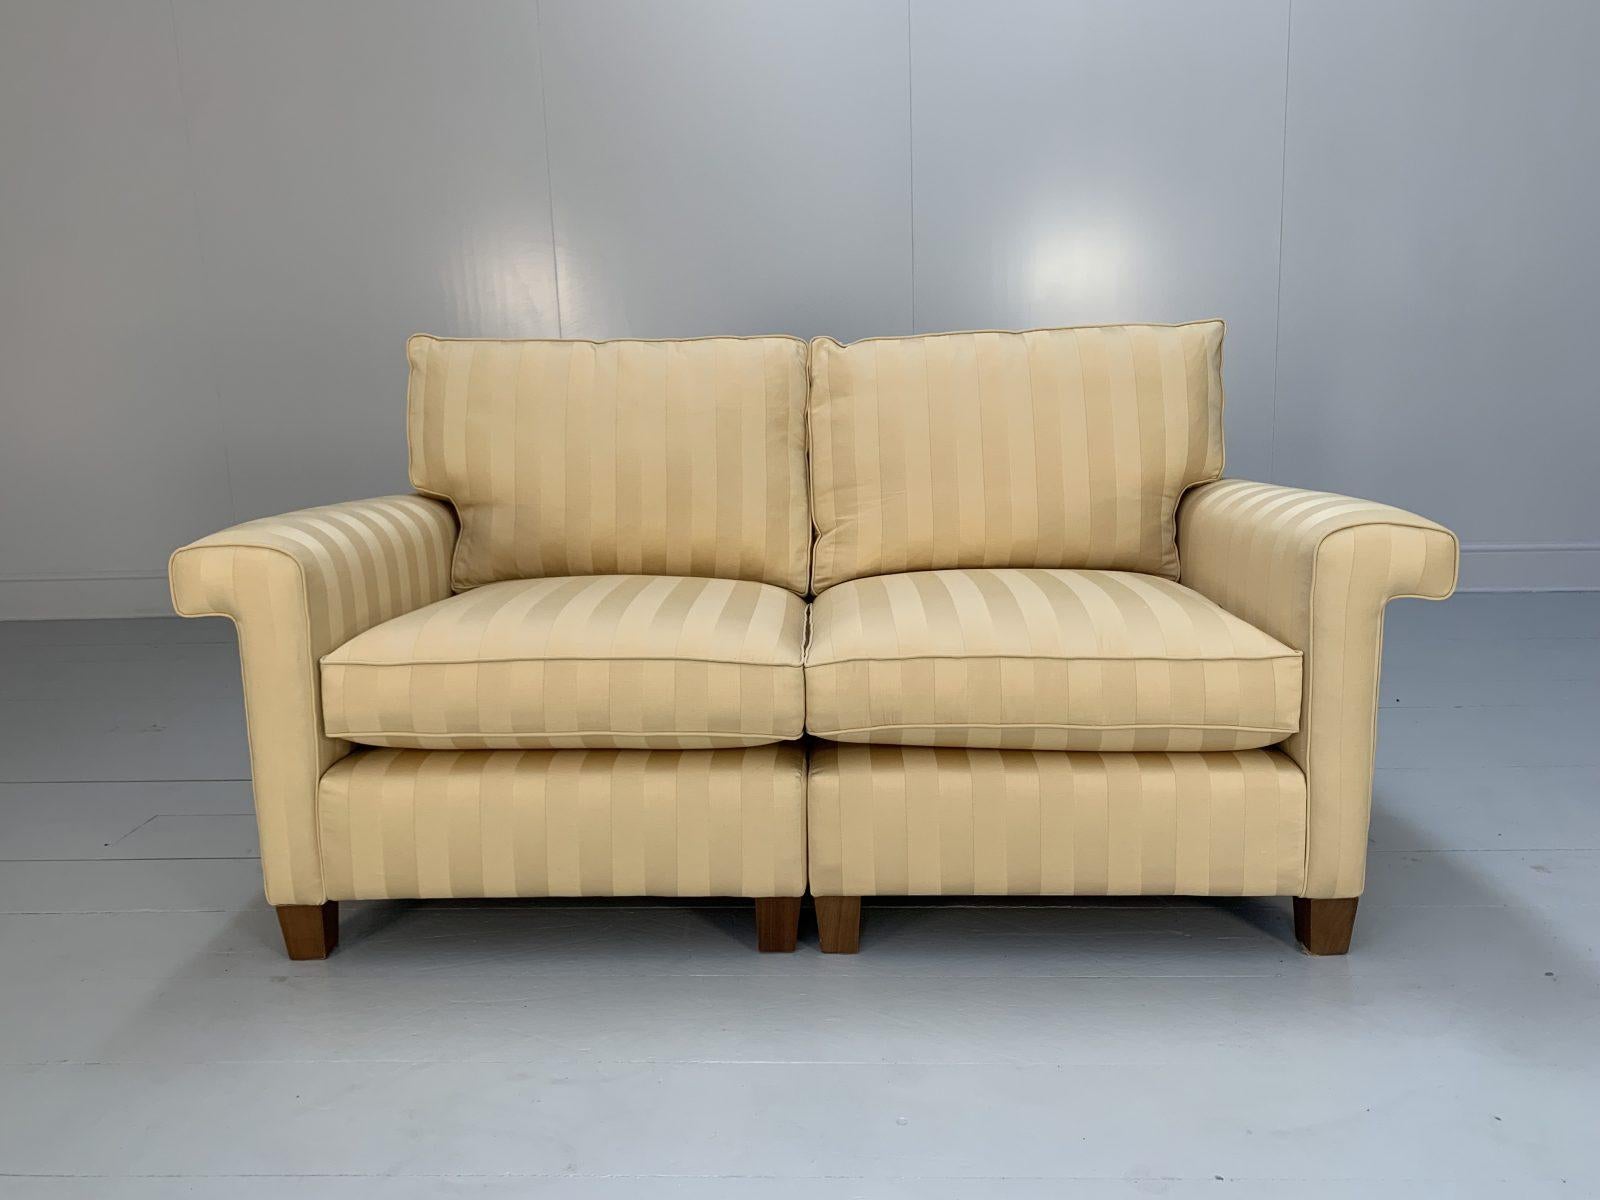 Bonjour les amis, et bienvenue à une nouvelle offre incontournable de Lord Browns Furniture, la première source de canapés et de chaises de qualité au Royaume-Uni.

Nous vous proposons un superbe et majestueux canapé 2,5 places 